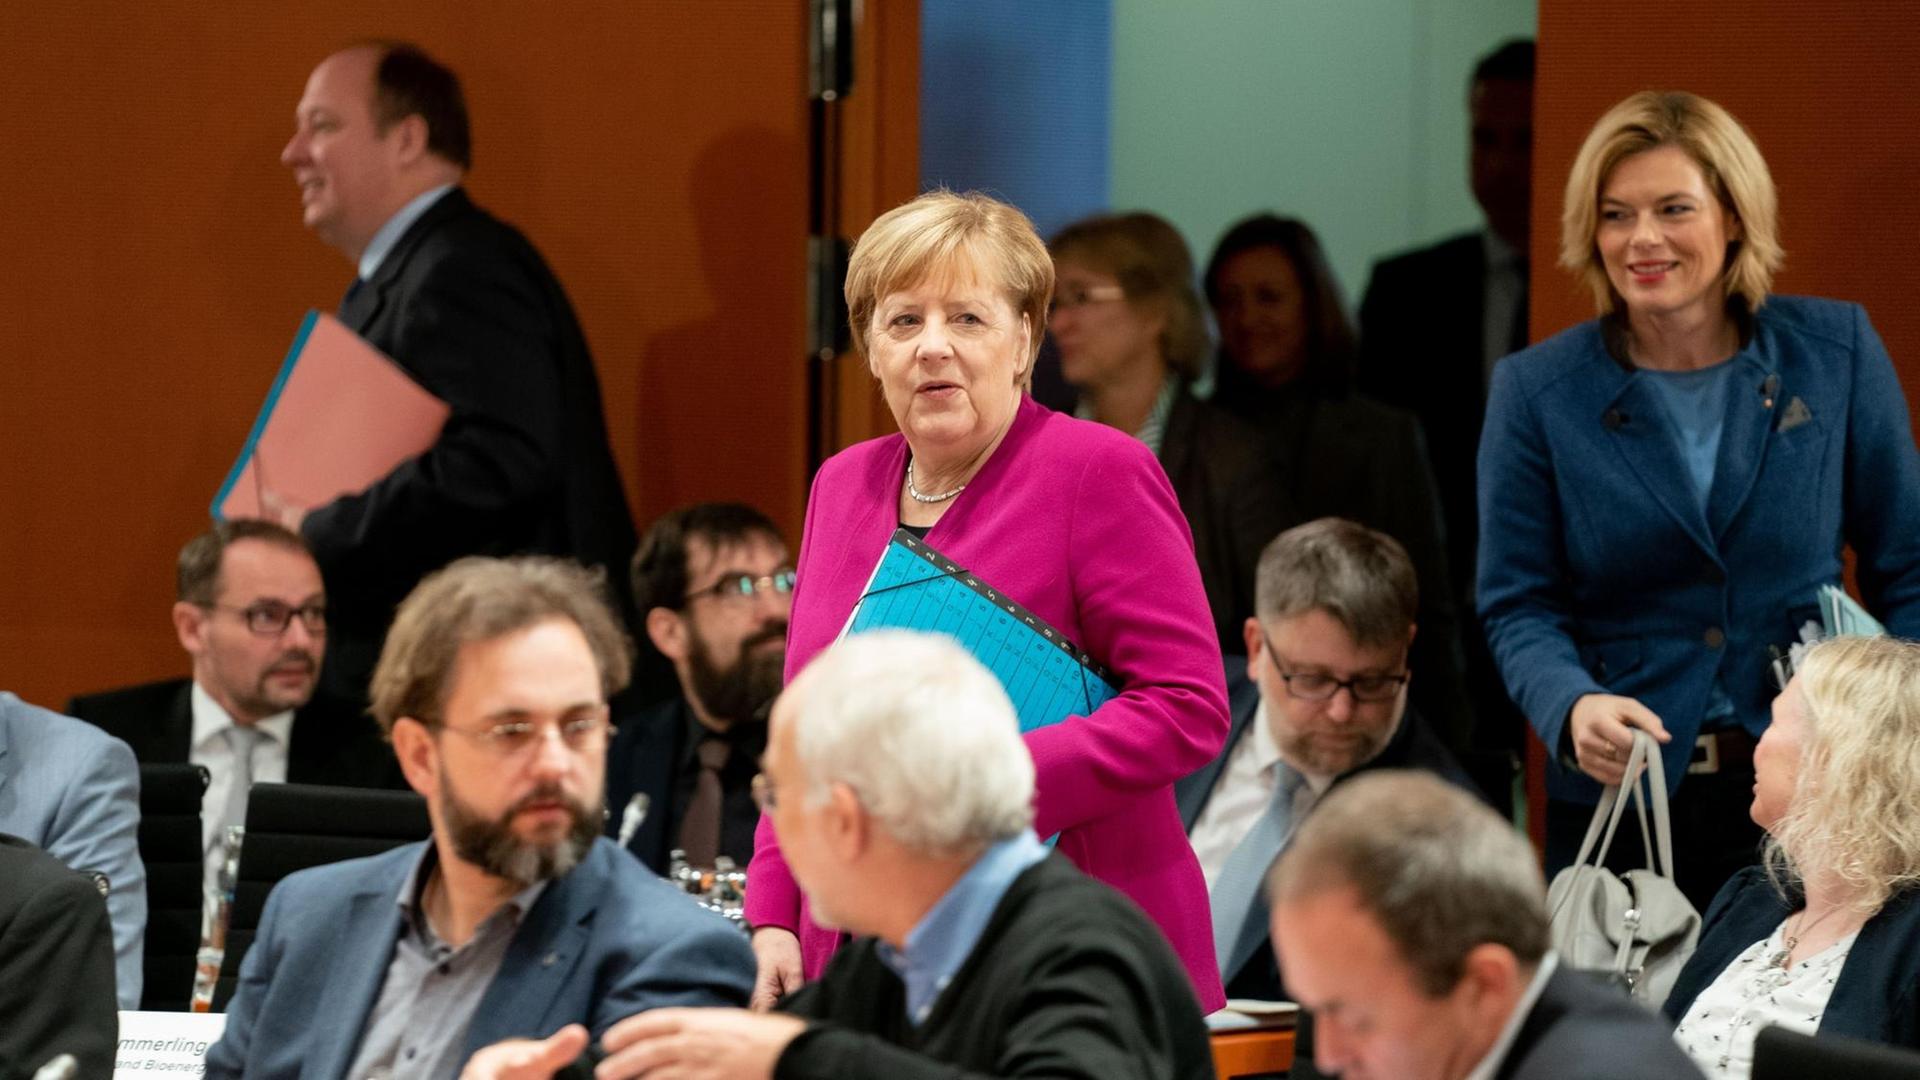 Merkel im roten Kostüm und Klöckner im blauen Kostüm mit Handtasche gehen gerade in den Saal rein, in dem schon zahlreiche Teilnehmer sitzen.